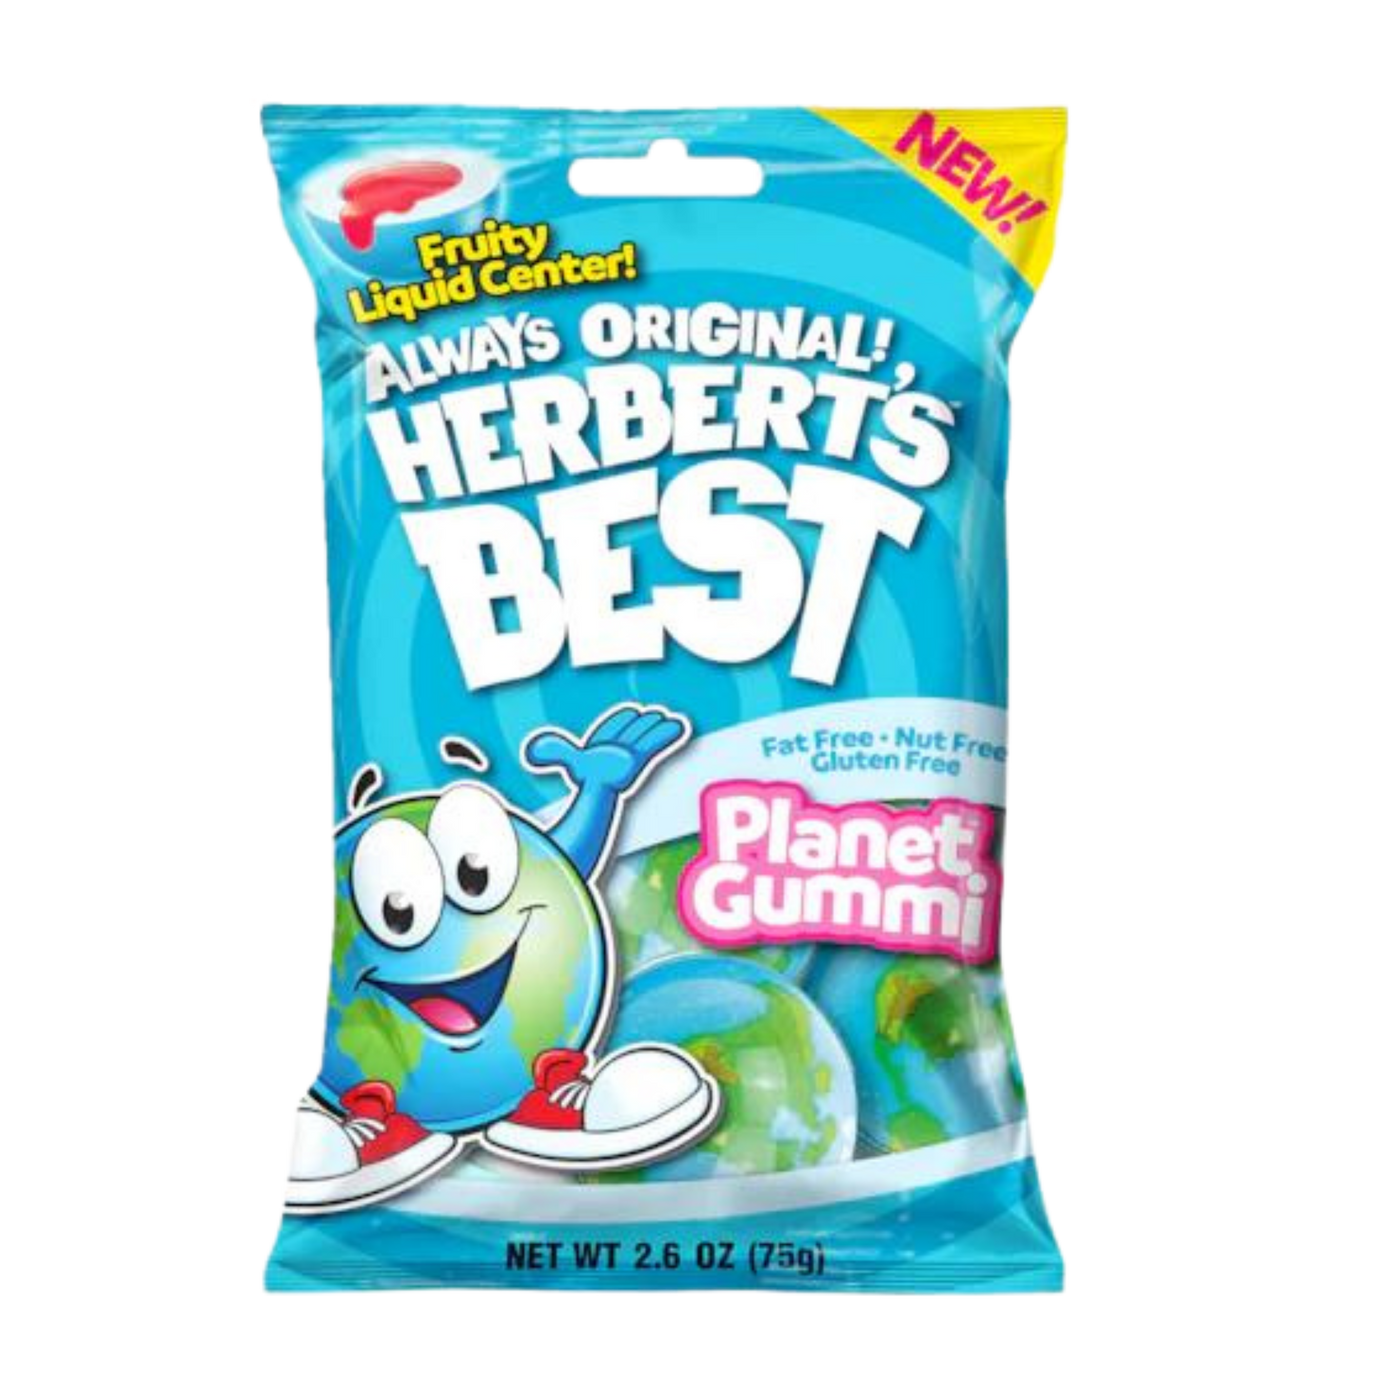 Herbert's Best - Planet Gummi